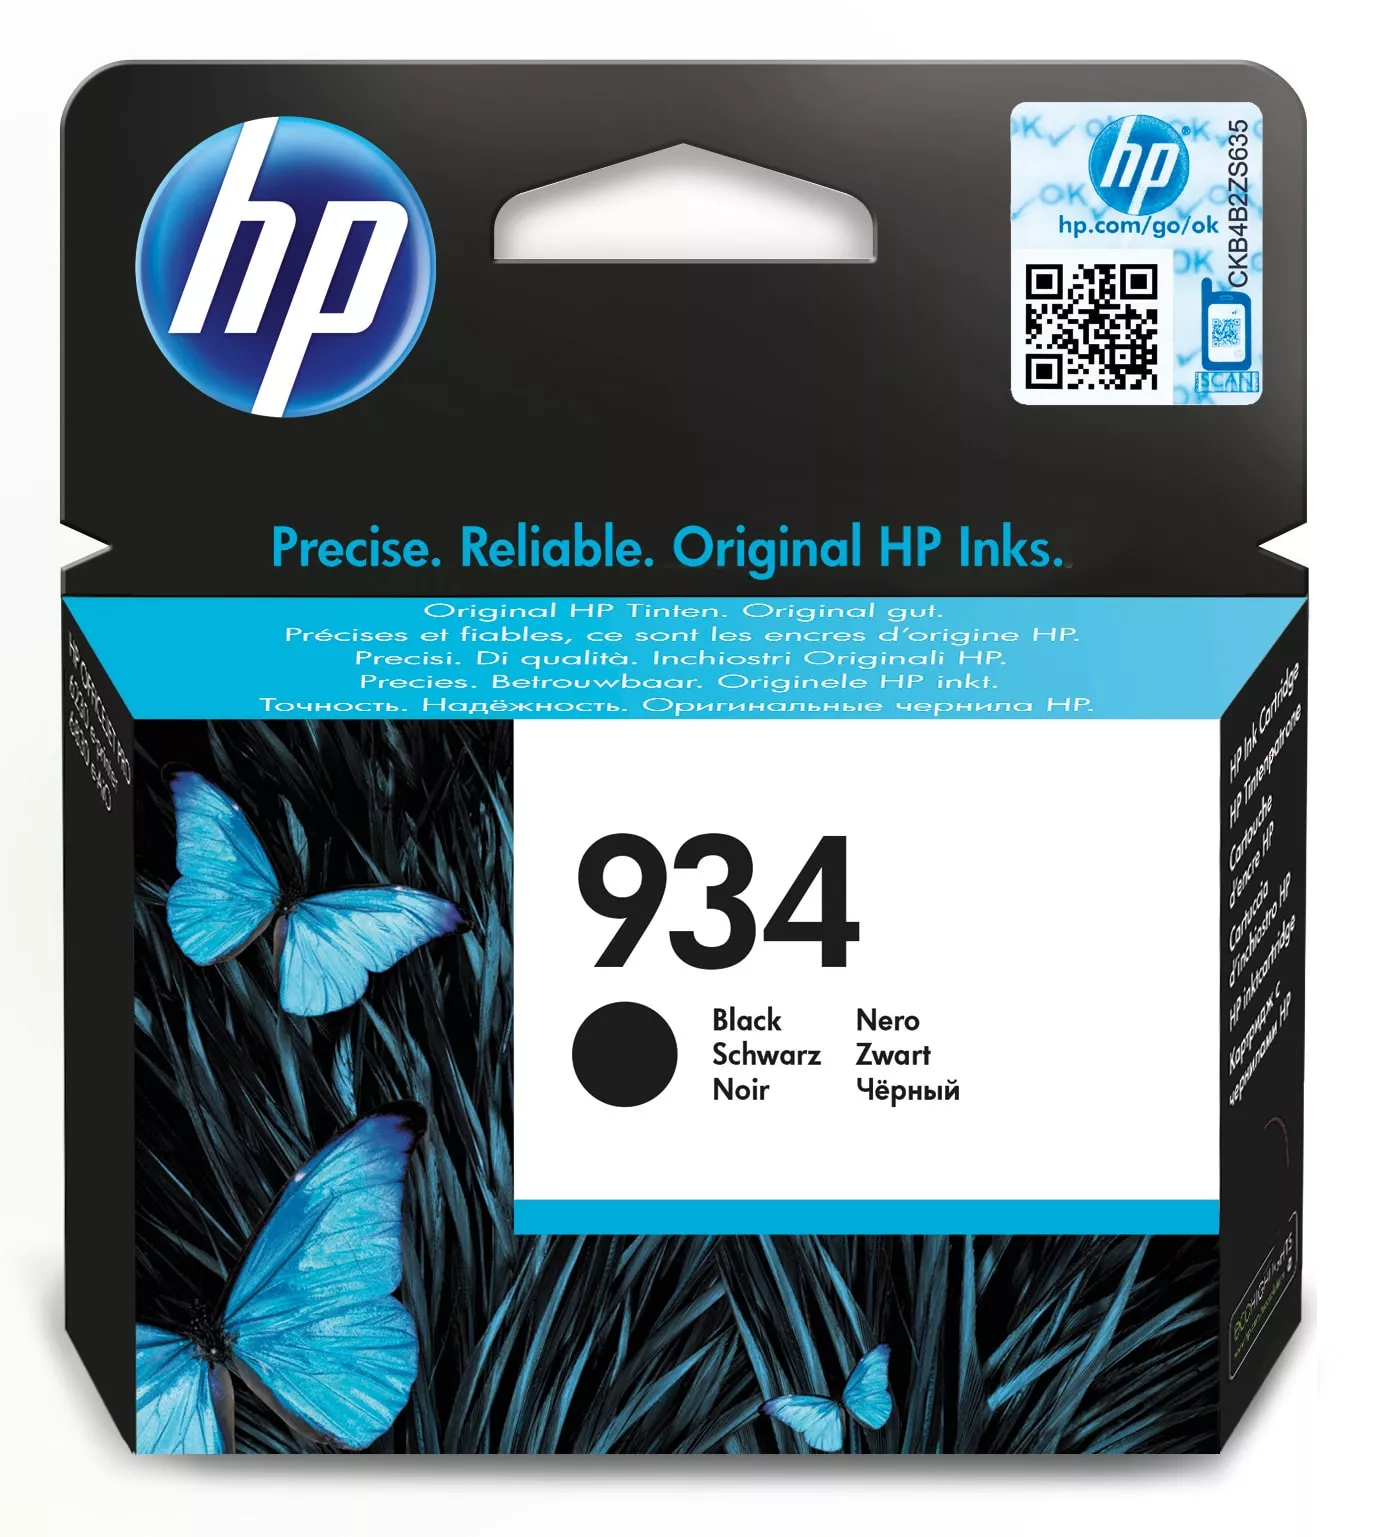 Achat HP 934 cartouche d'encre noire authentique au meilleur prix